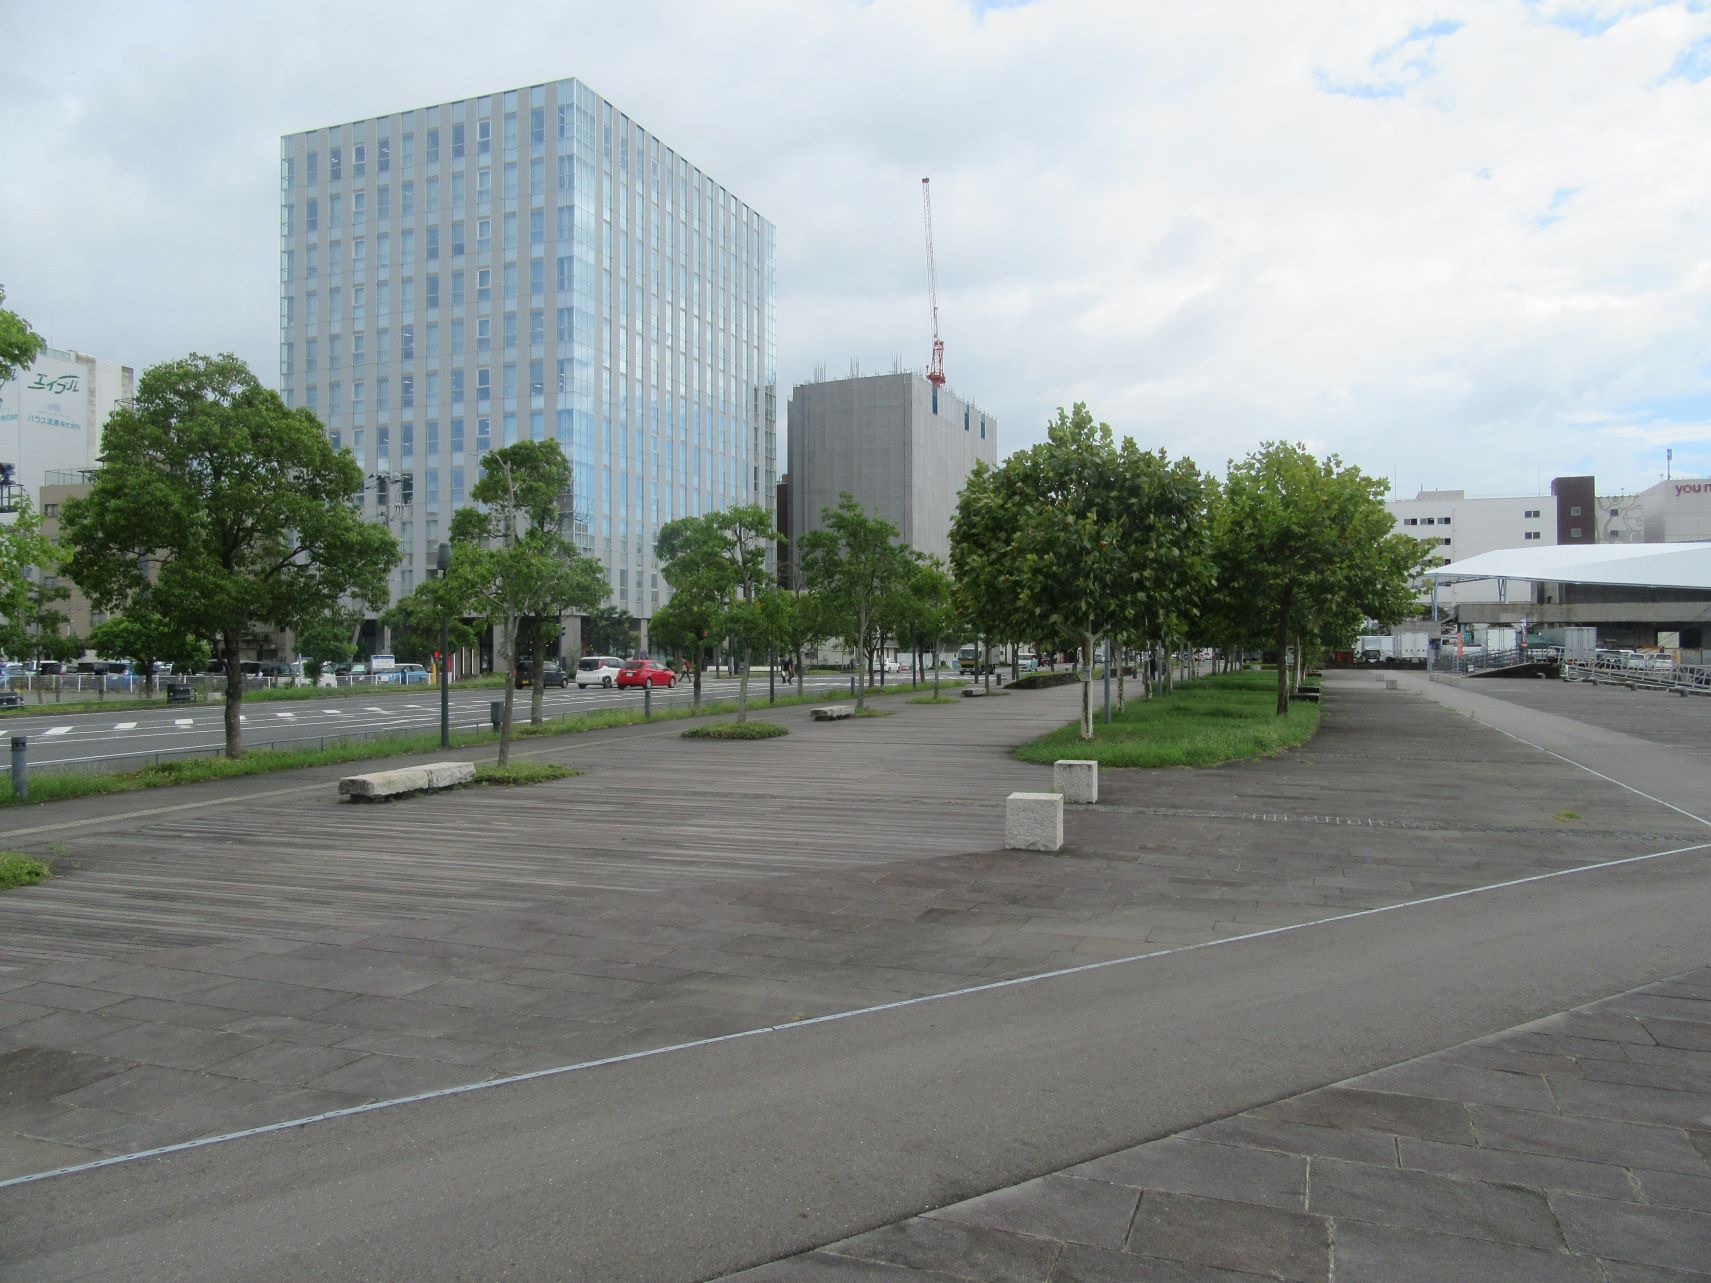 2023年9月5日撮影の、長崎市のプラタナス広場。